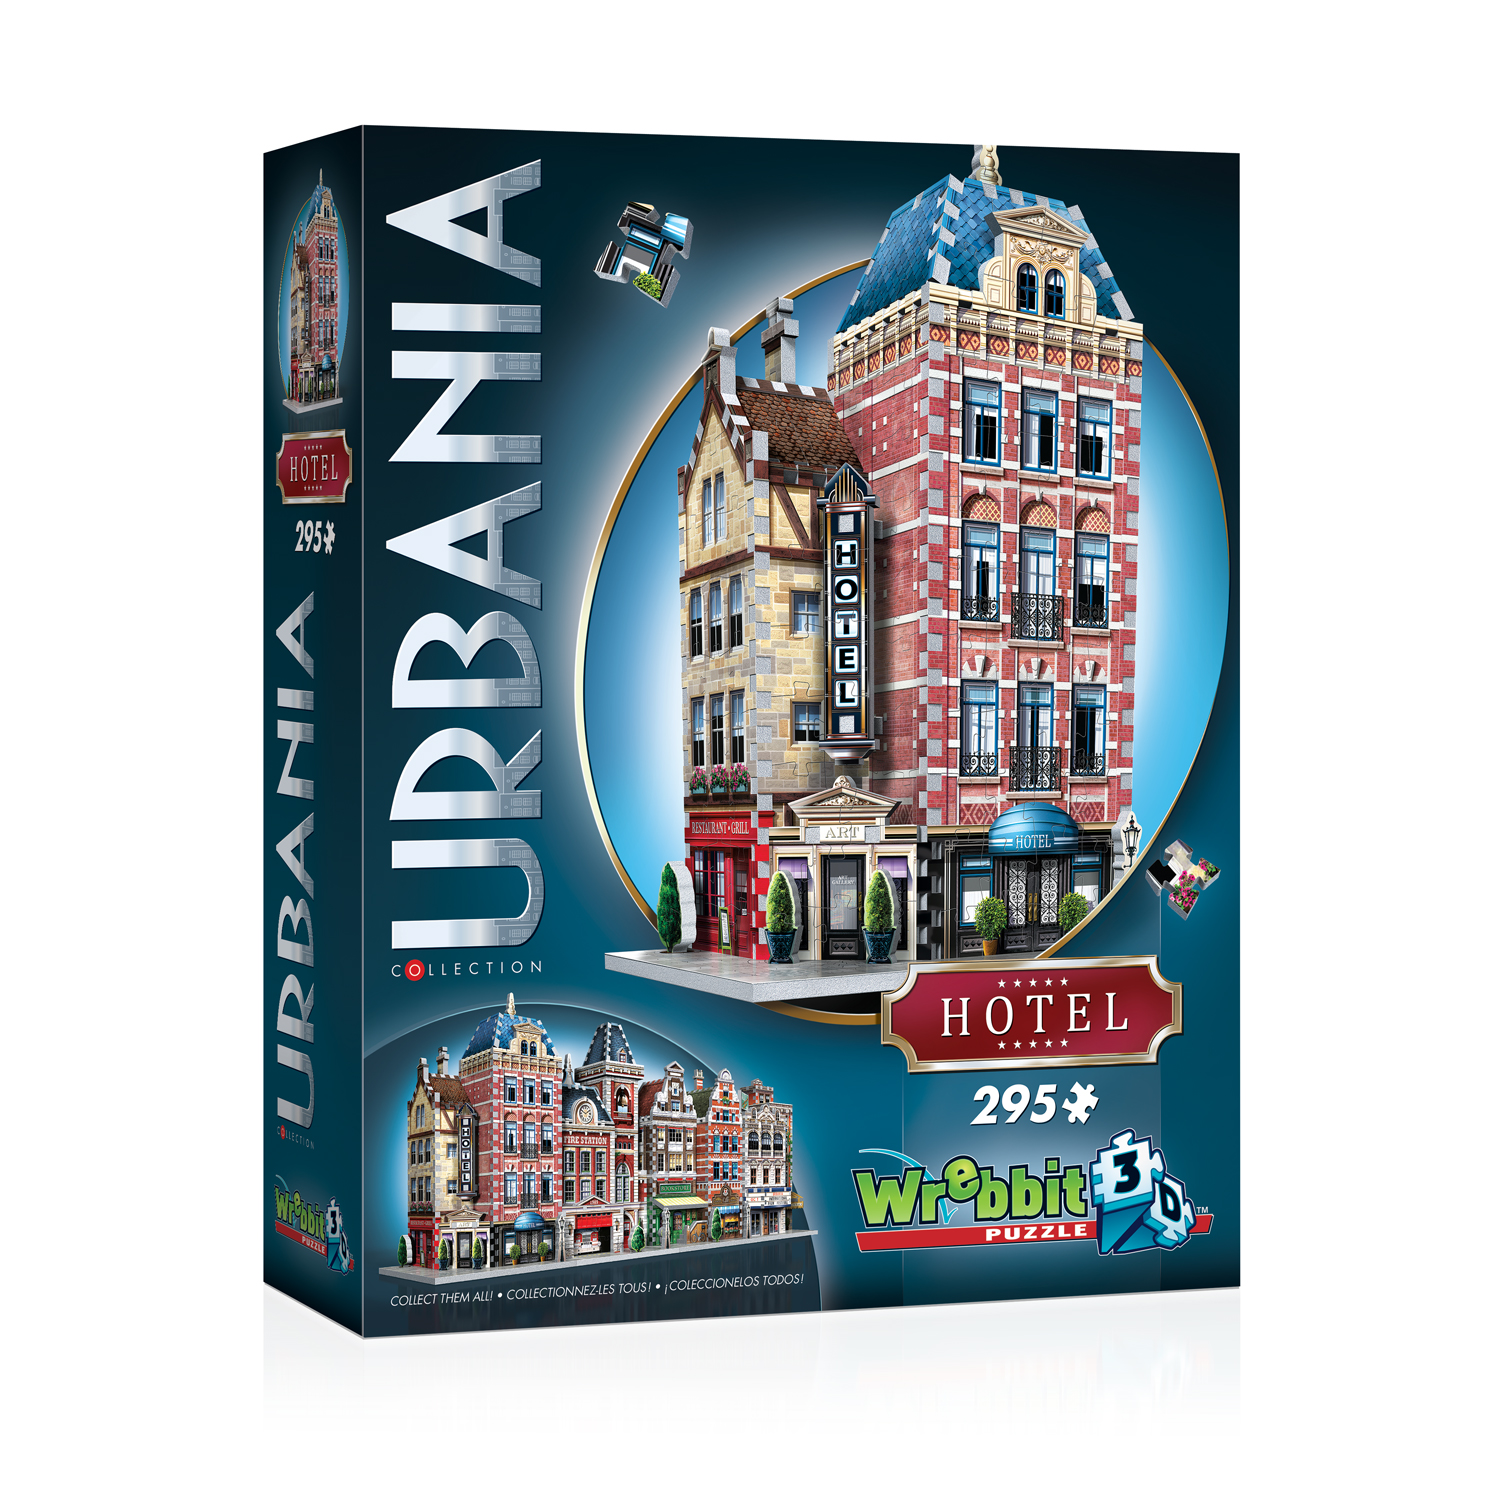 Hotel Urbania Baukunst Stadthäuser 3D Puzzle 295 Teile Haus Wrebbit 